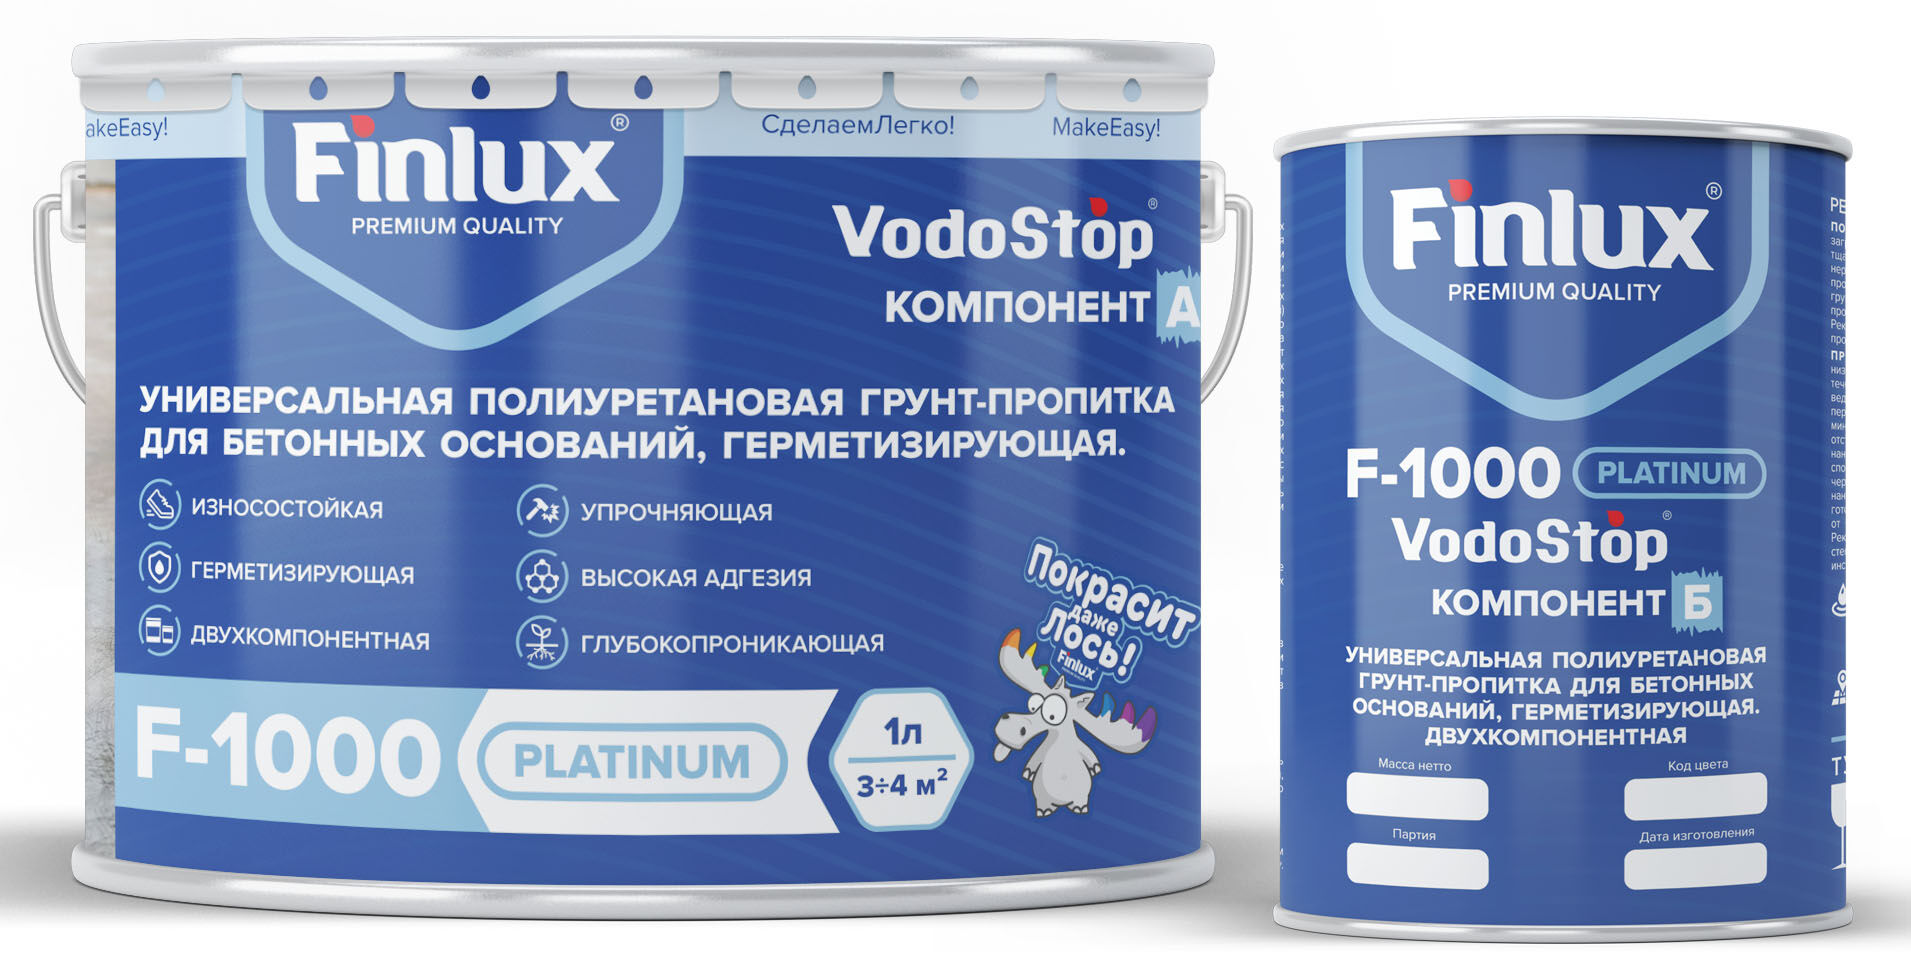 Универсальная полиуретановая герметизирующая грунт-пропитка для бетона Finlux F-1000 Platinum 10 кг VodoStop®